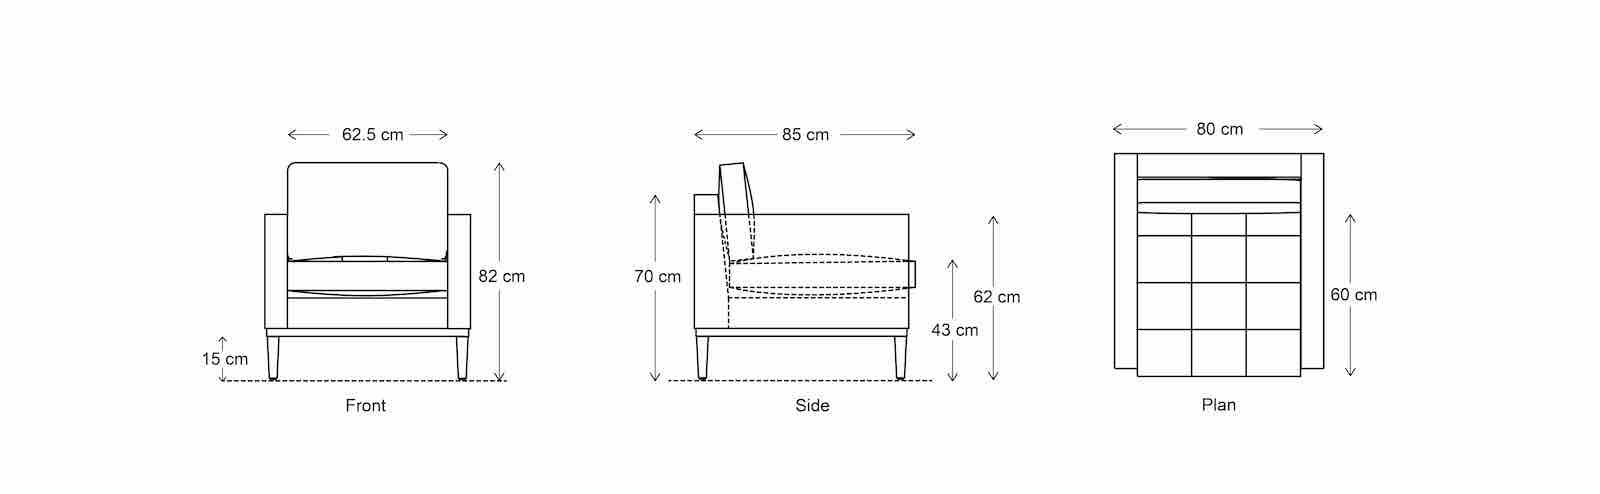 armchair sofa dimensions